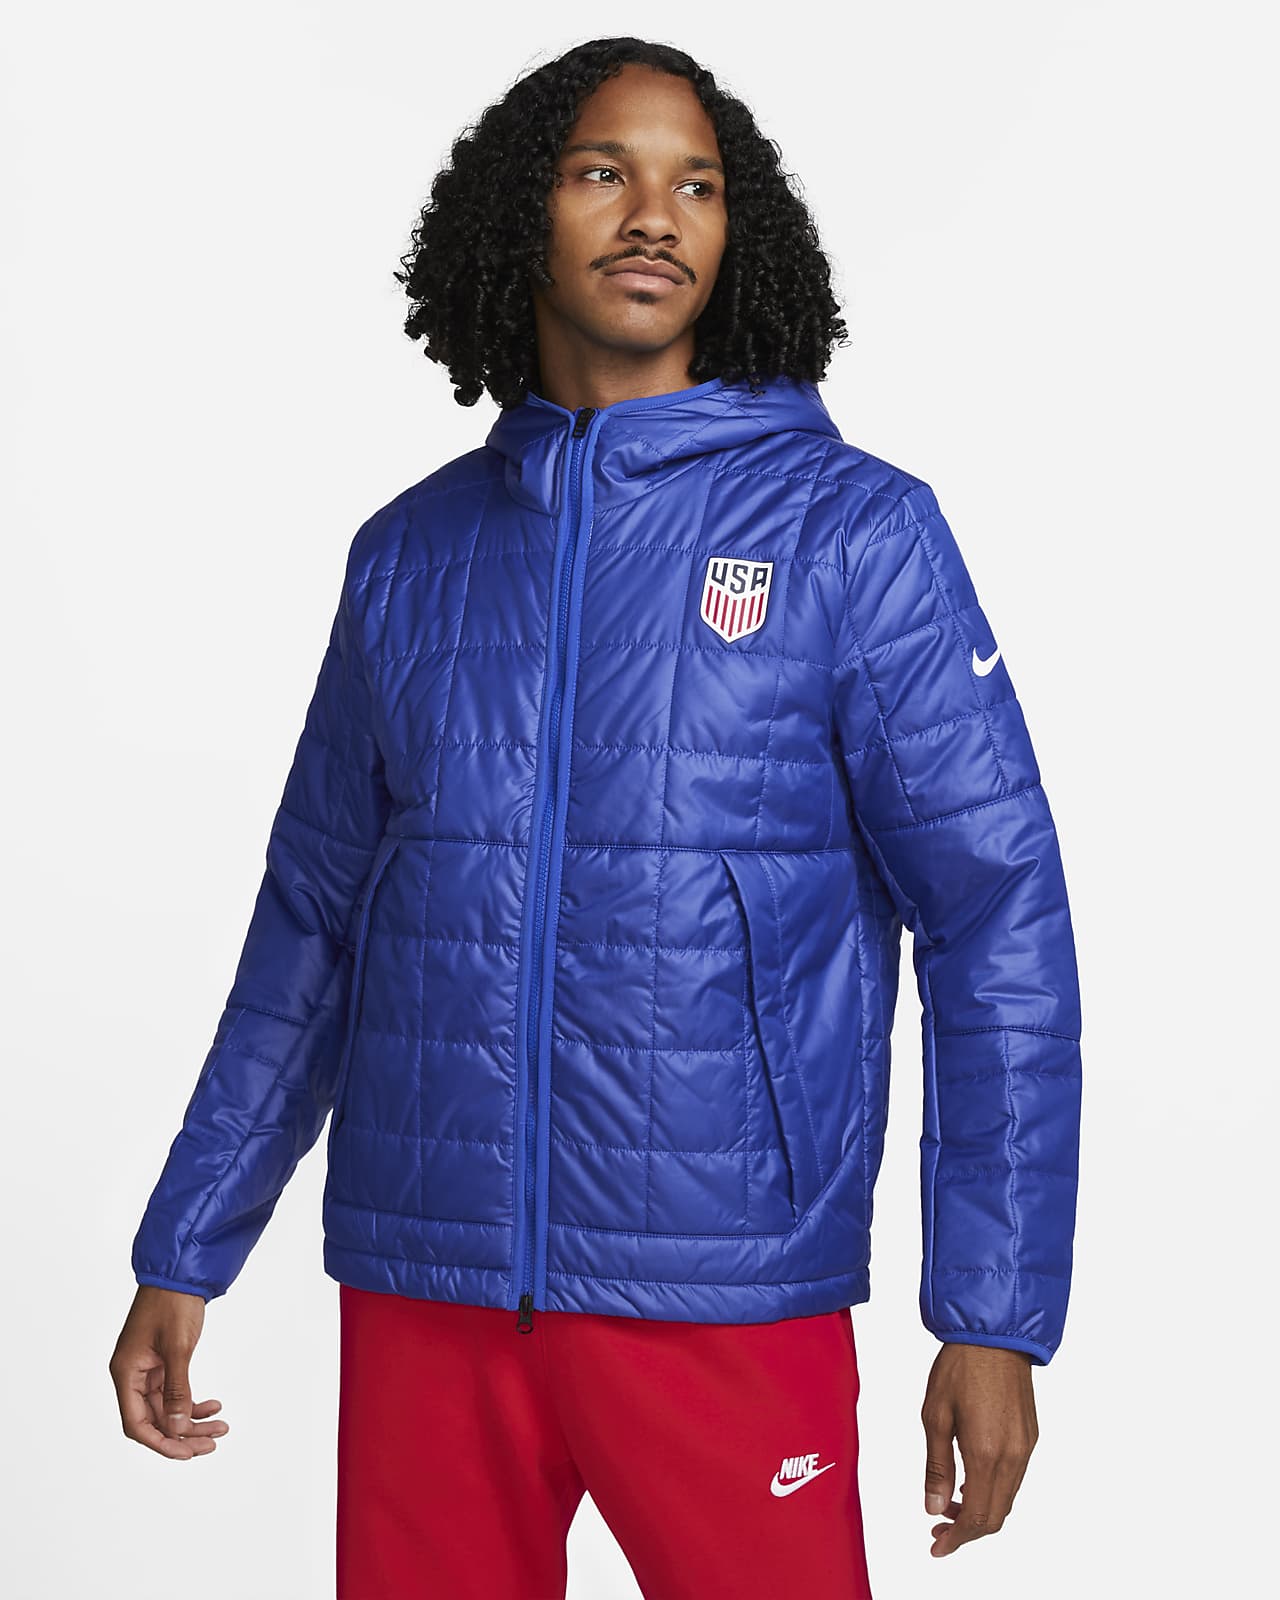 dealer crisis Premier U.S. Men's Nike Fleece-Lined Hooded Jacket. Nike.com